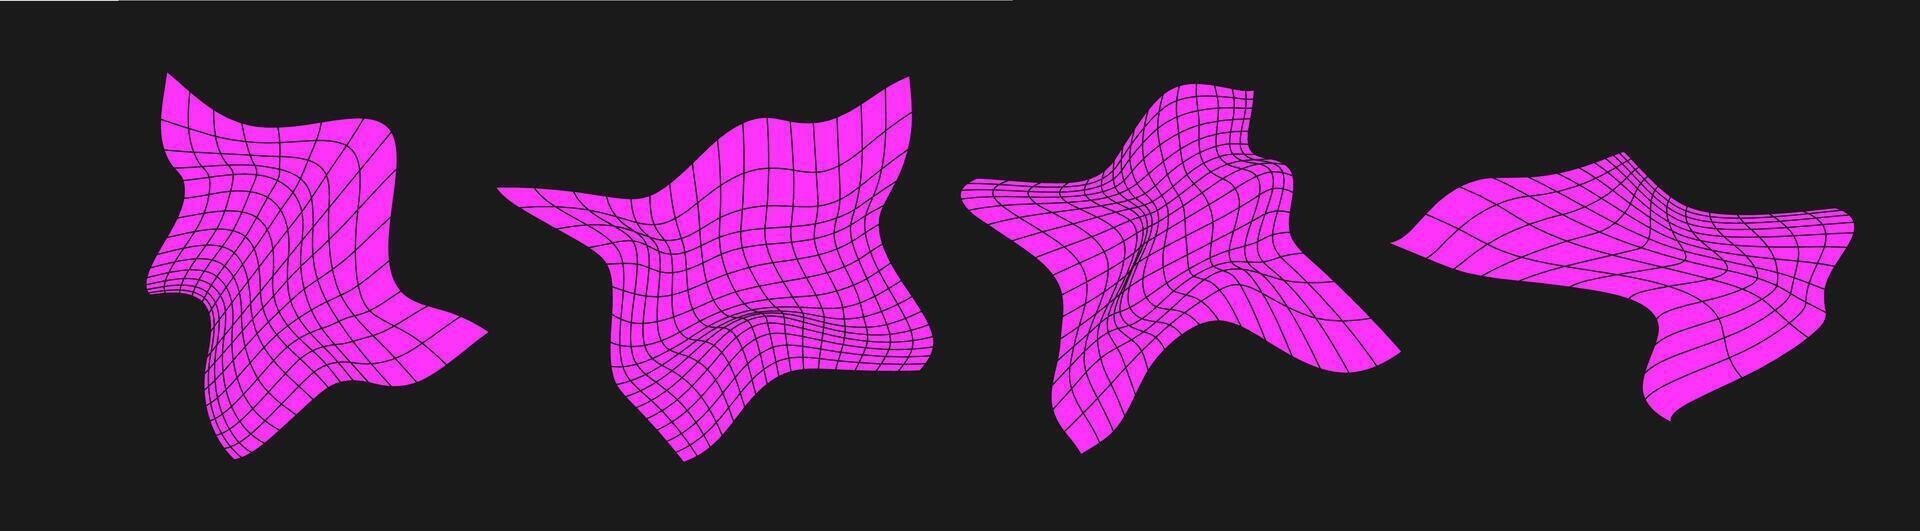 conjunto de distorsionado ciber rejillas cyberpunk geometría elemento y2k estilo. aislado rosado malla en negro antecedentes. vector Moda ilustración.